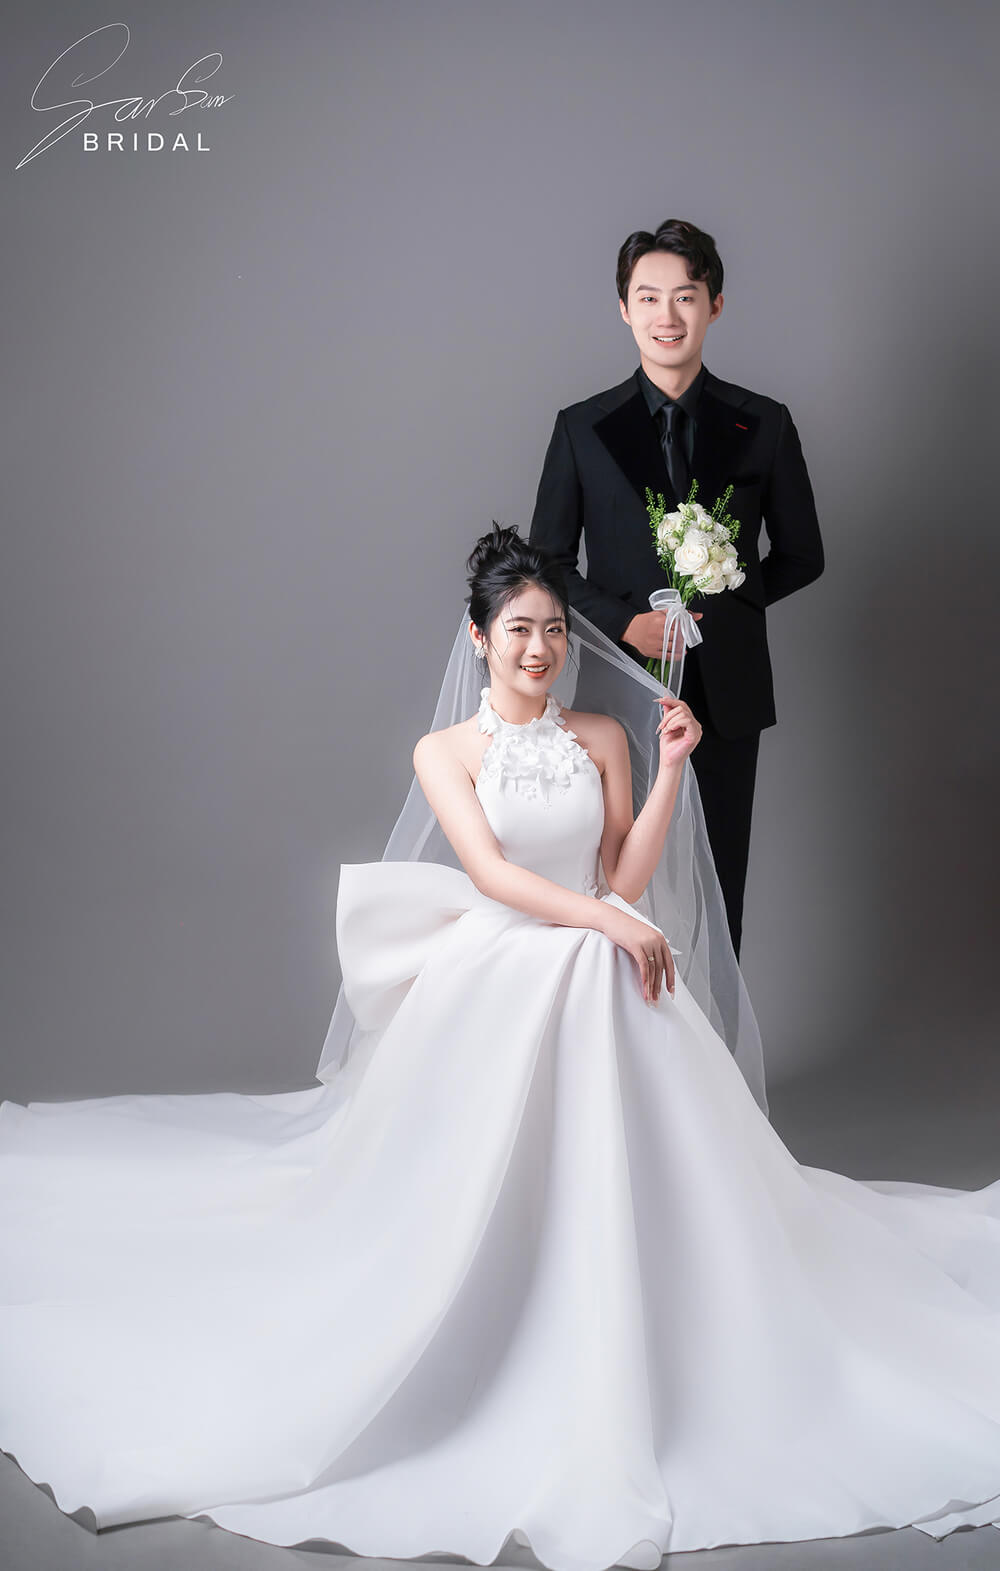 Chụp hình cưới Hàn Quốc với phông nền xám